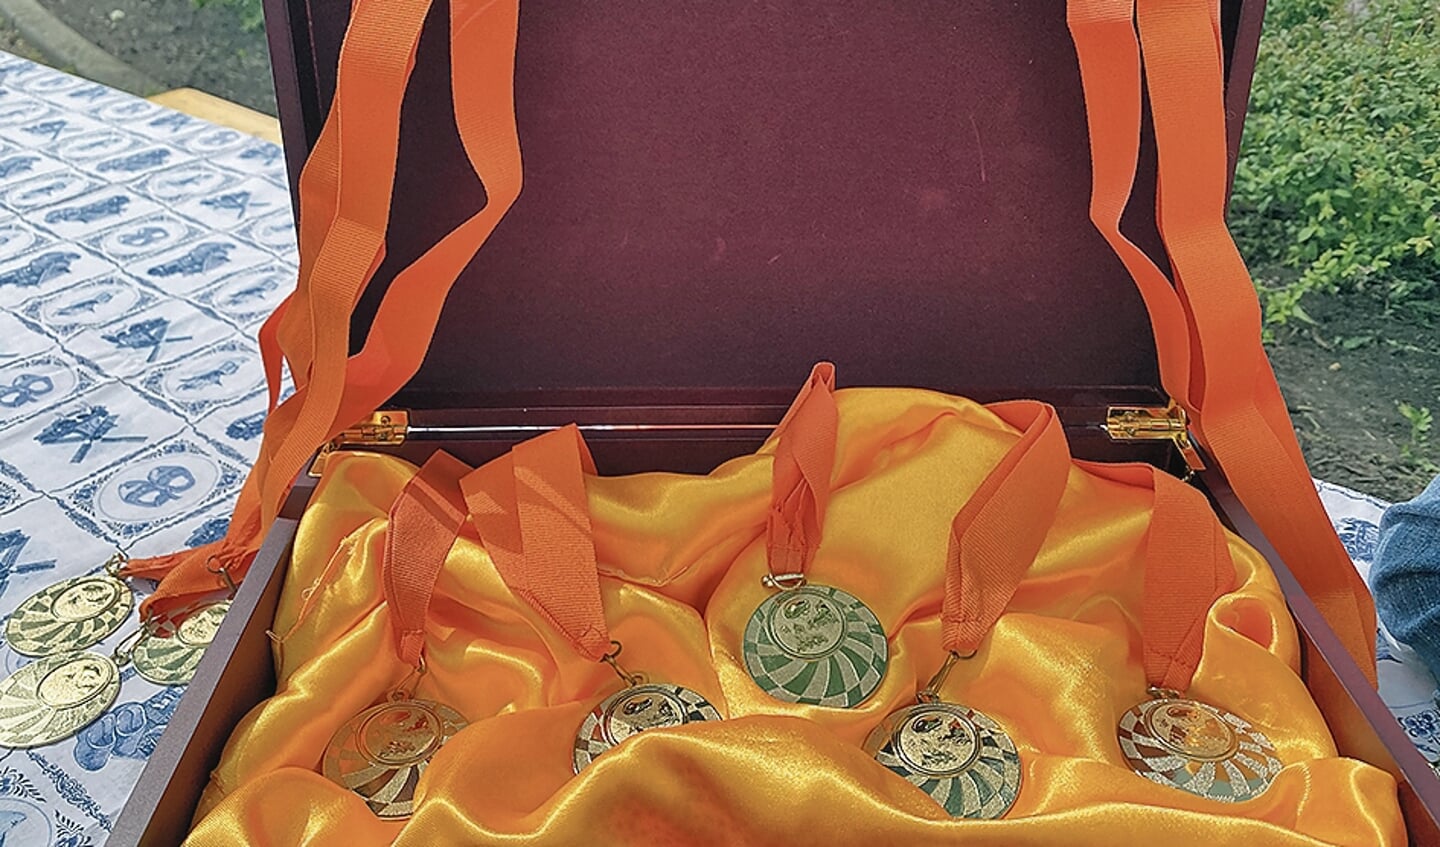 De medailles voor het skeelerparcours lagen vast uitgestald.